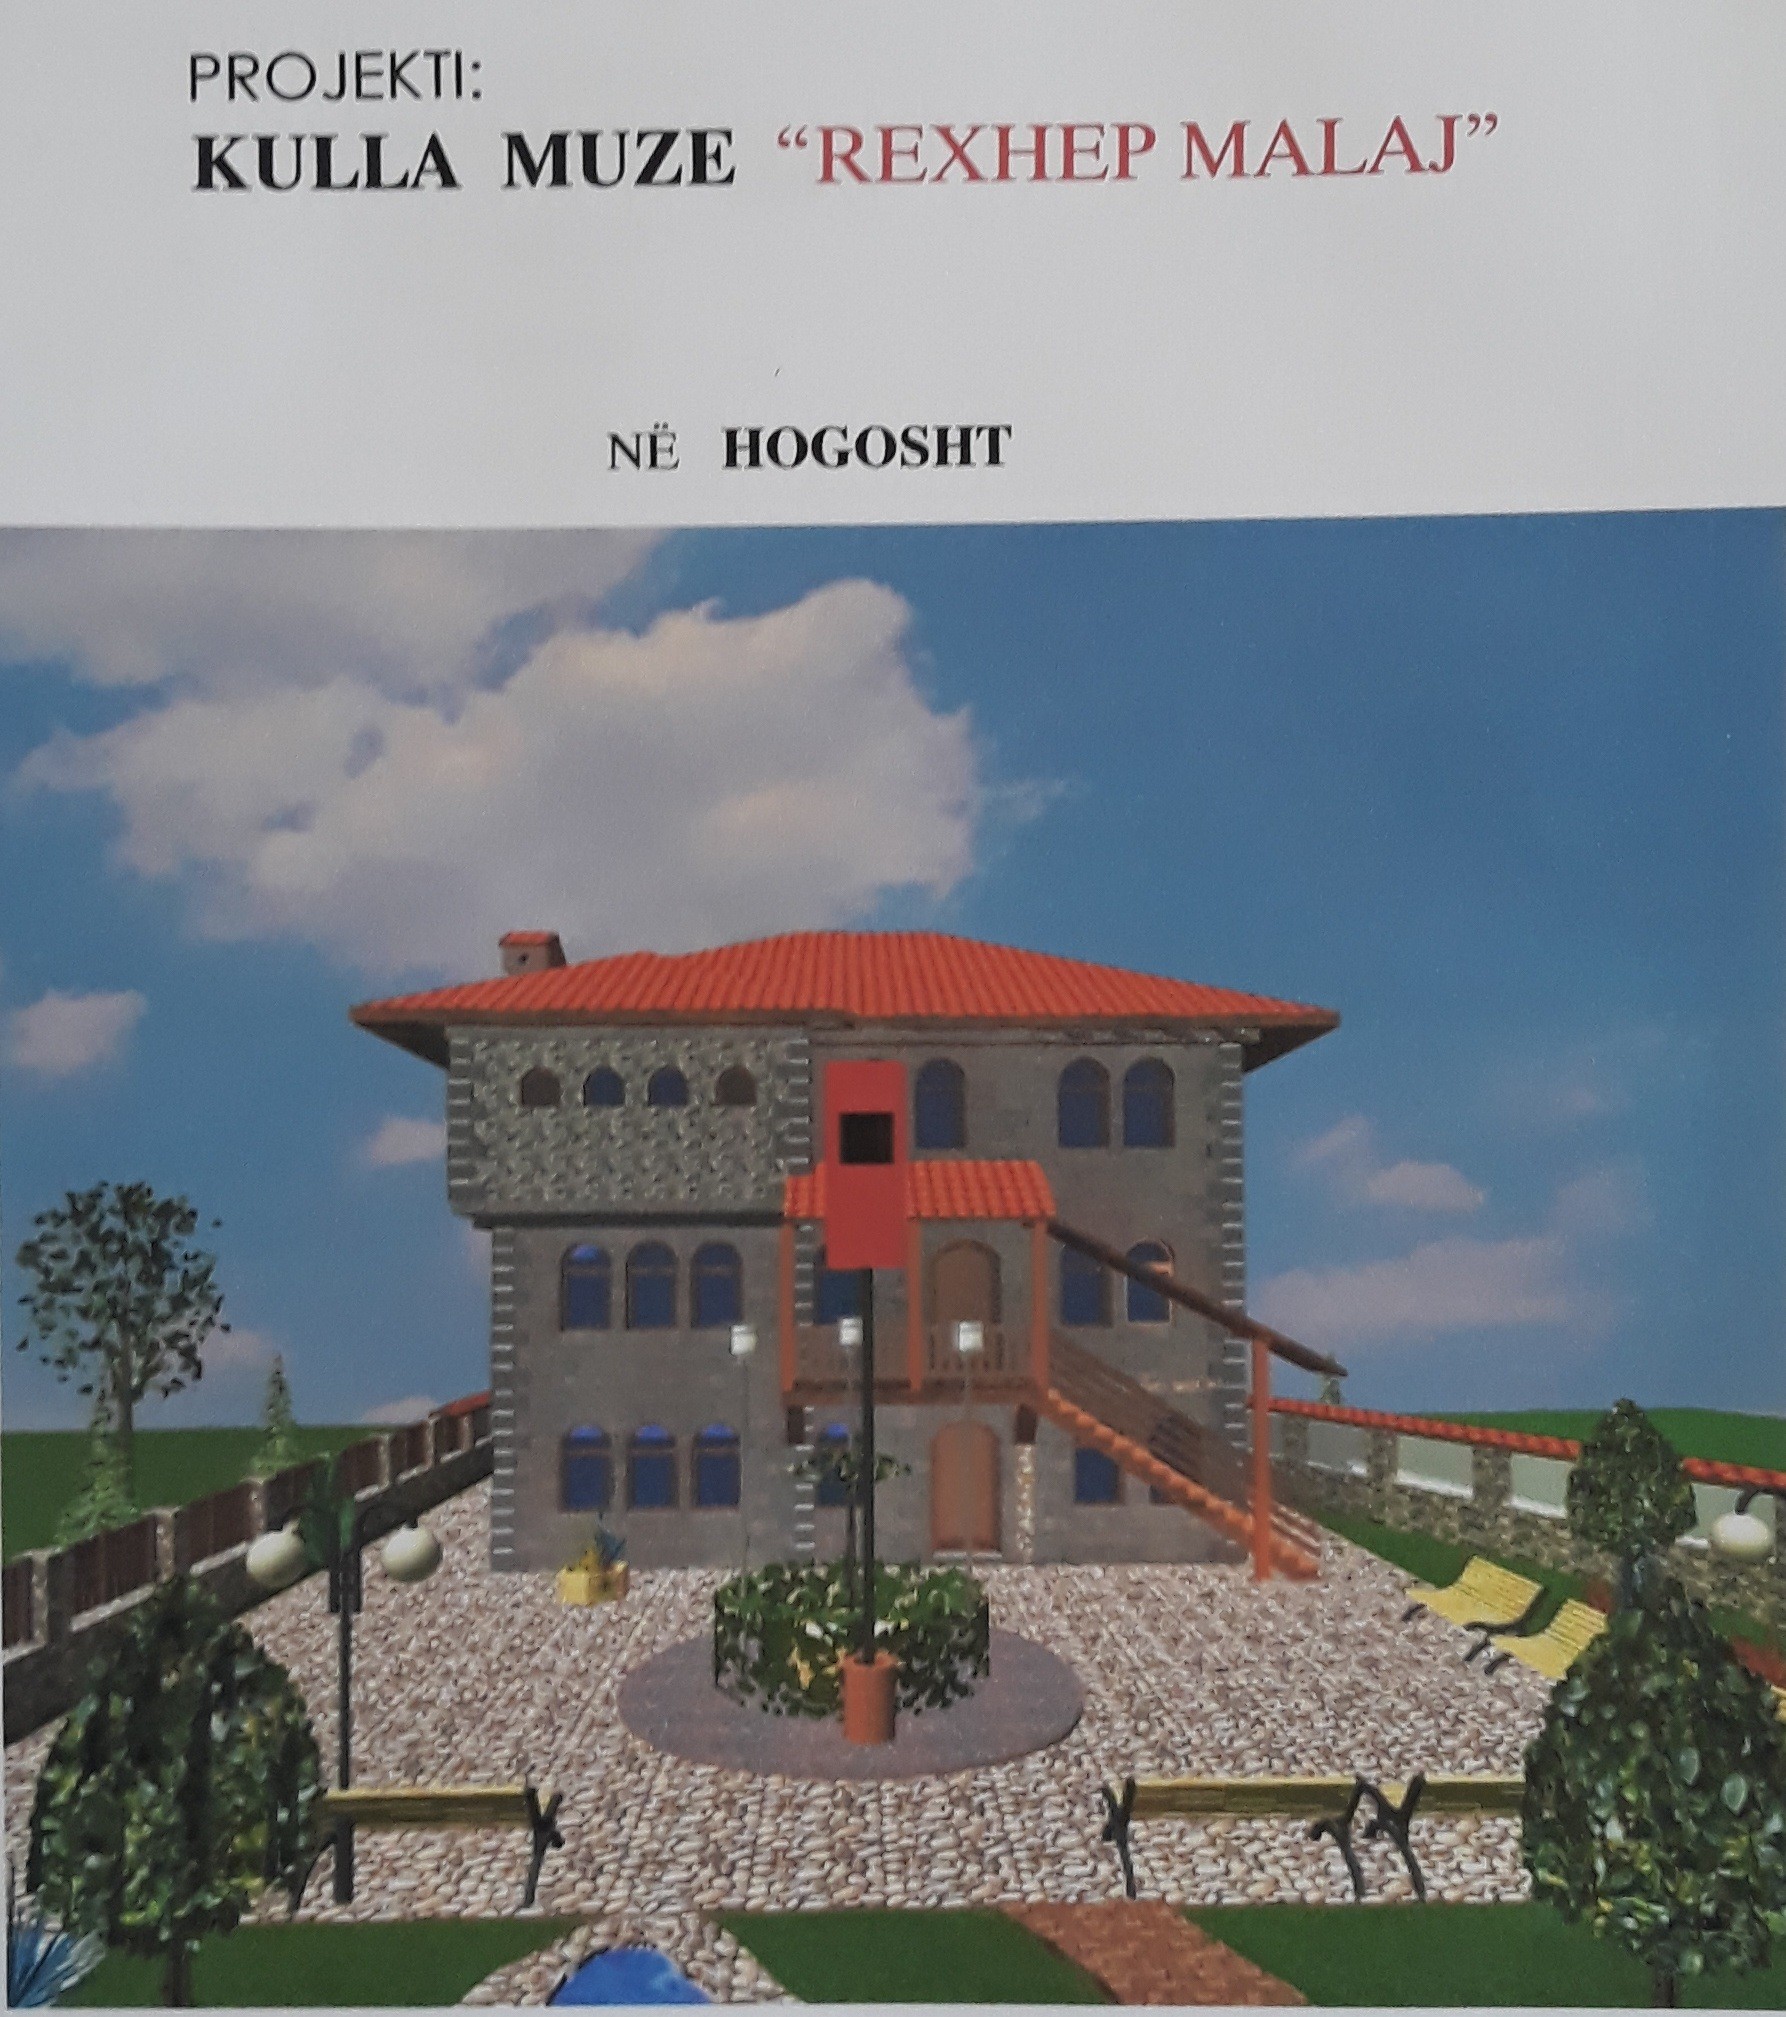 Nënshkruhet memorandum për kompleksin "Rexhep Malaj" në Hogosht  